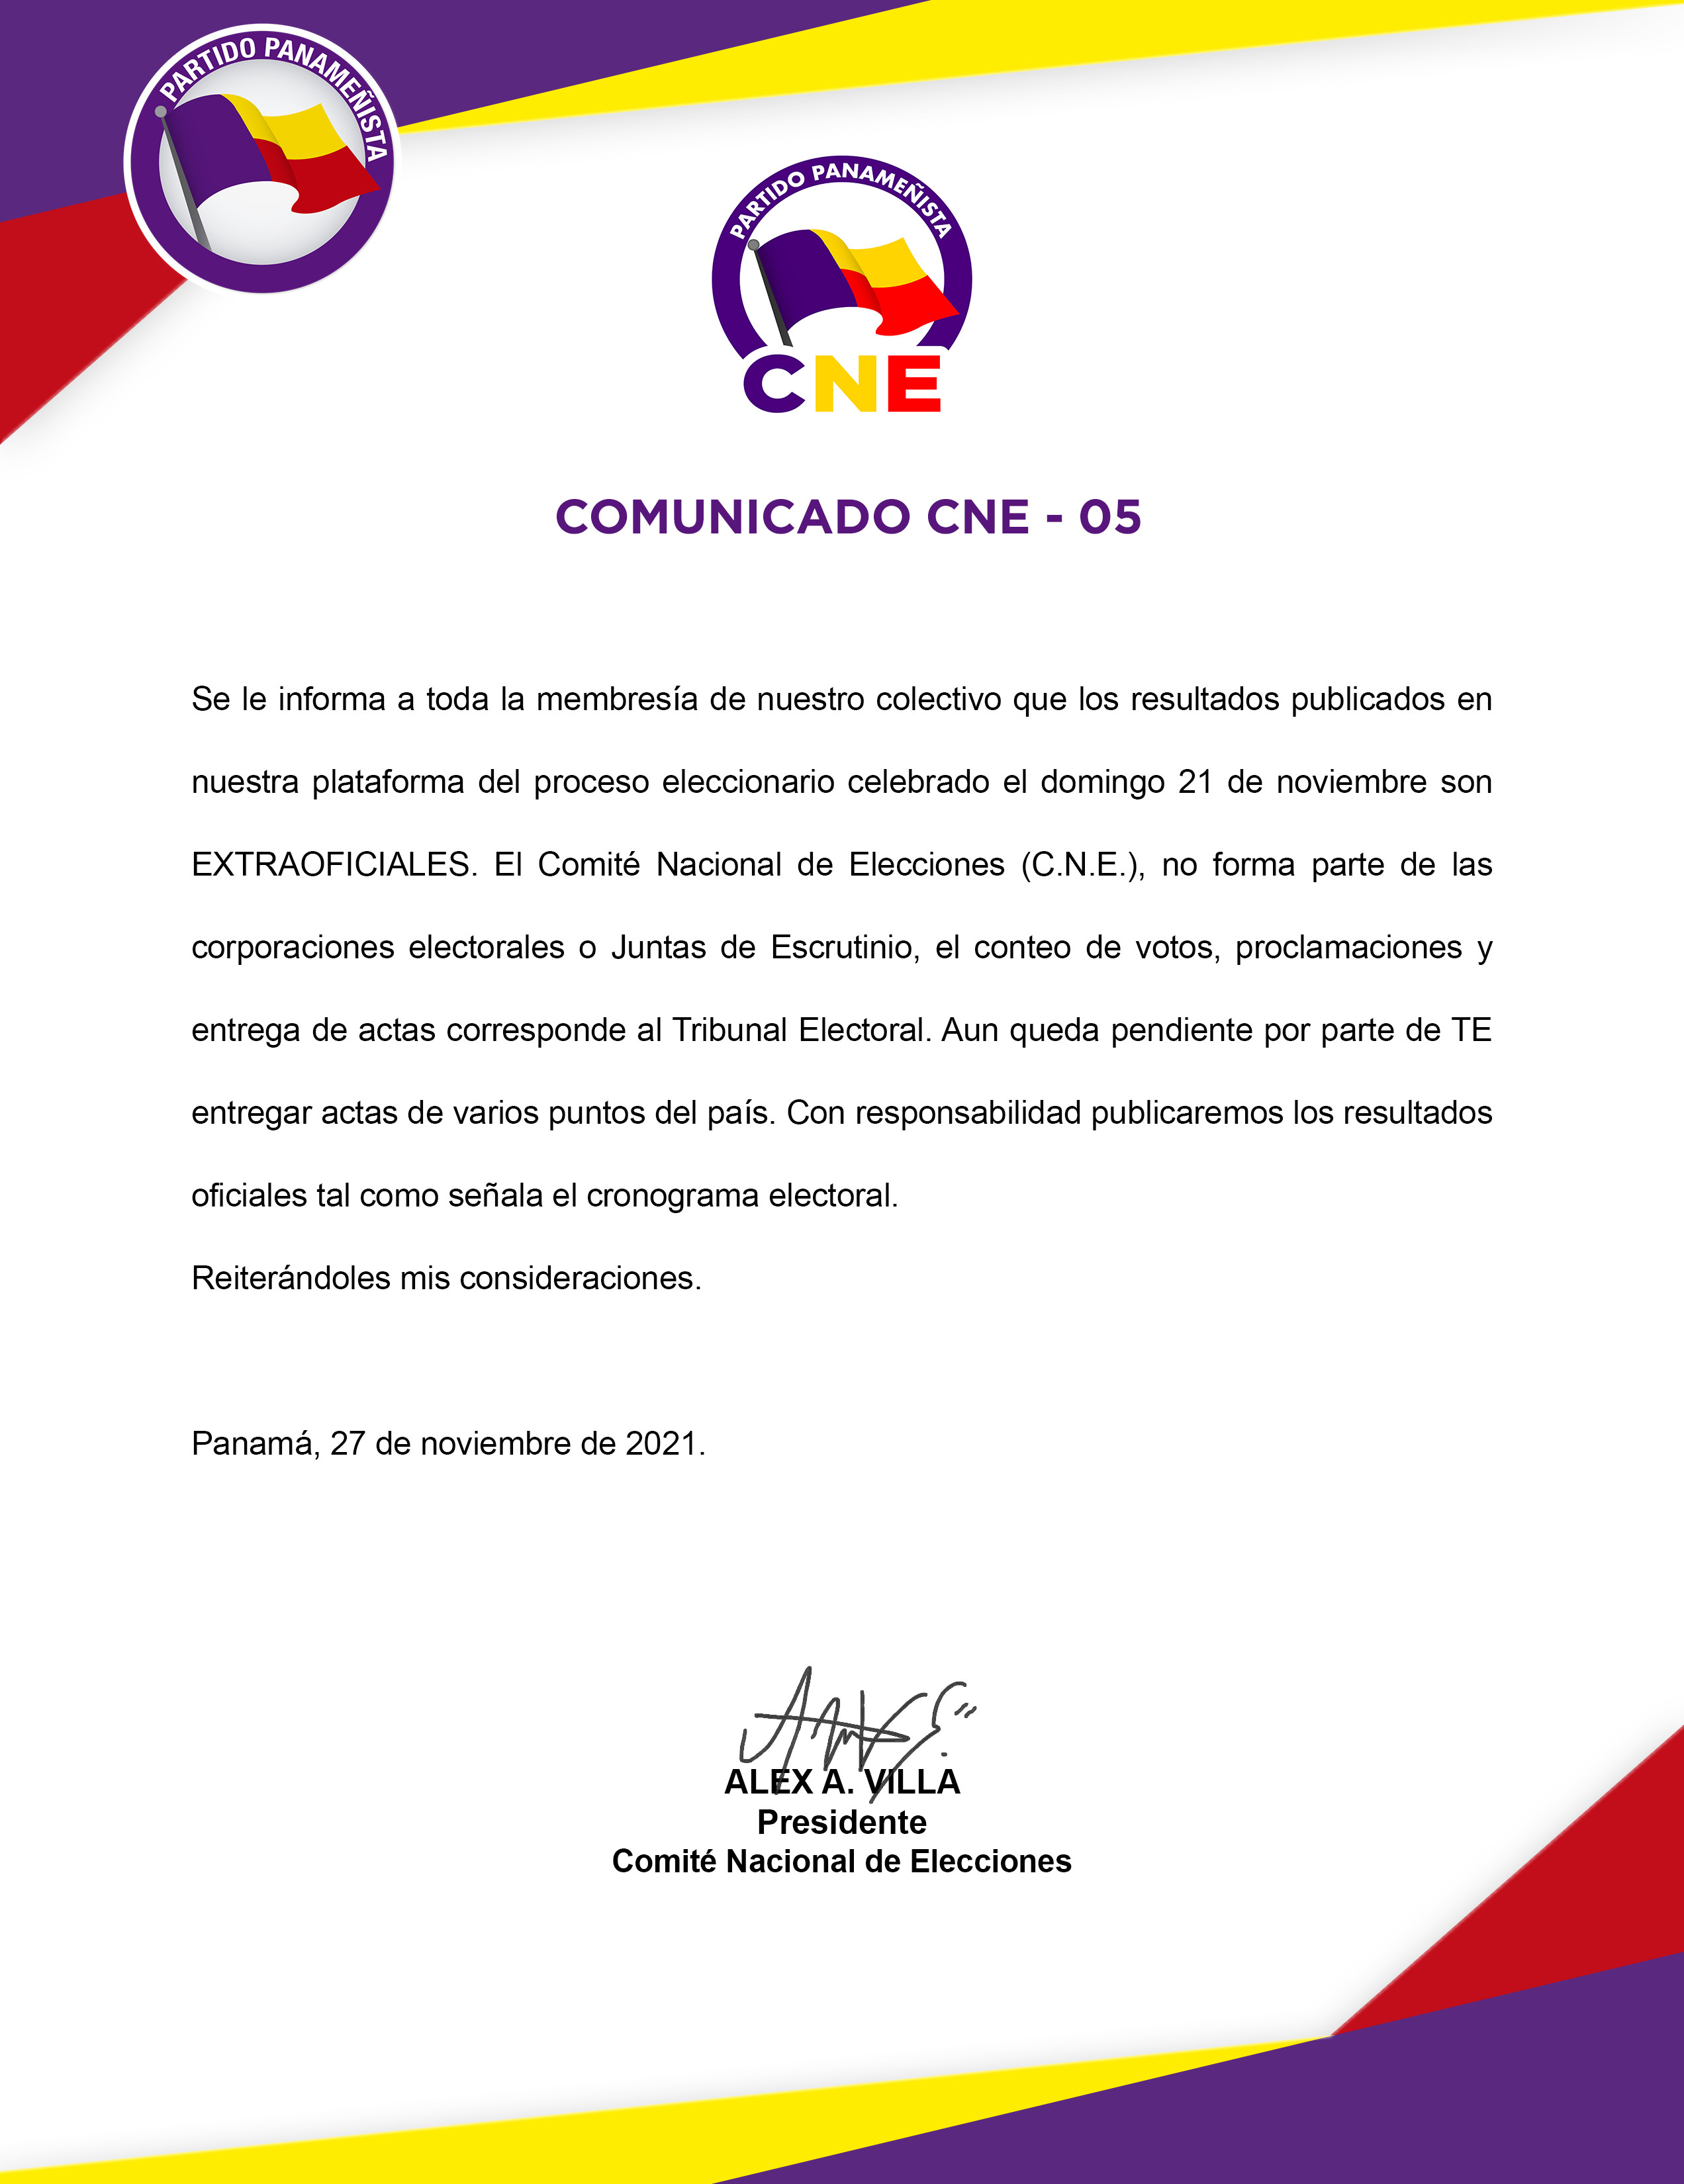 COMUNICADO_CNE-2021-5.jpg